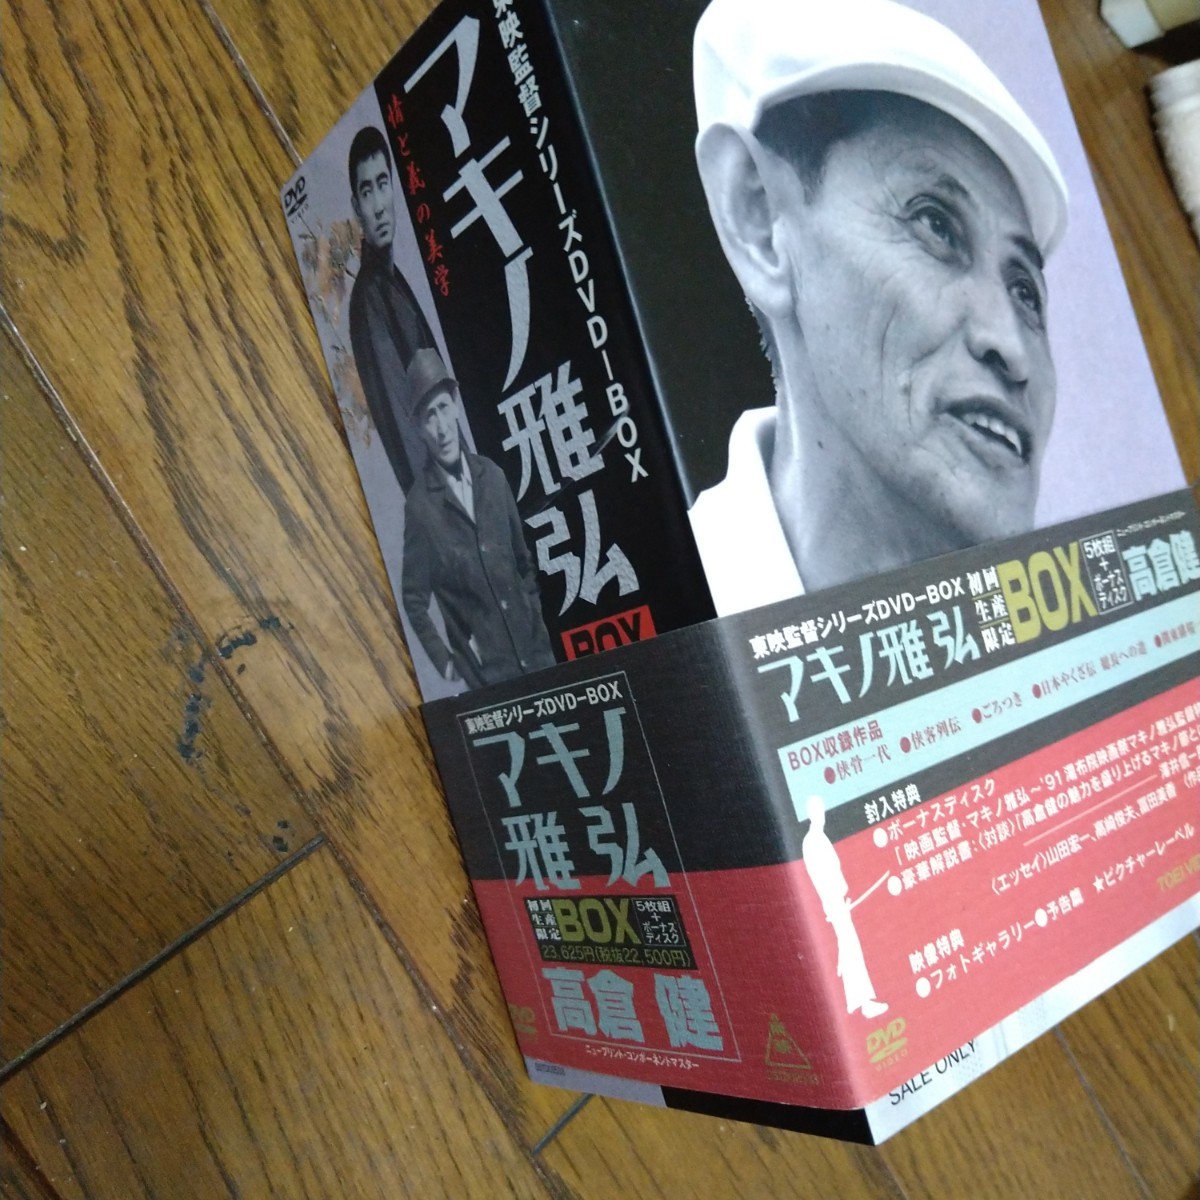 高倉健 DVD BOX マキノ雅弘